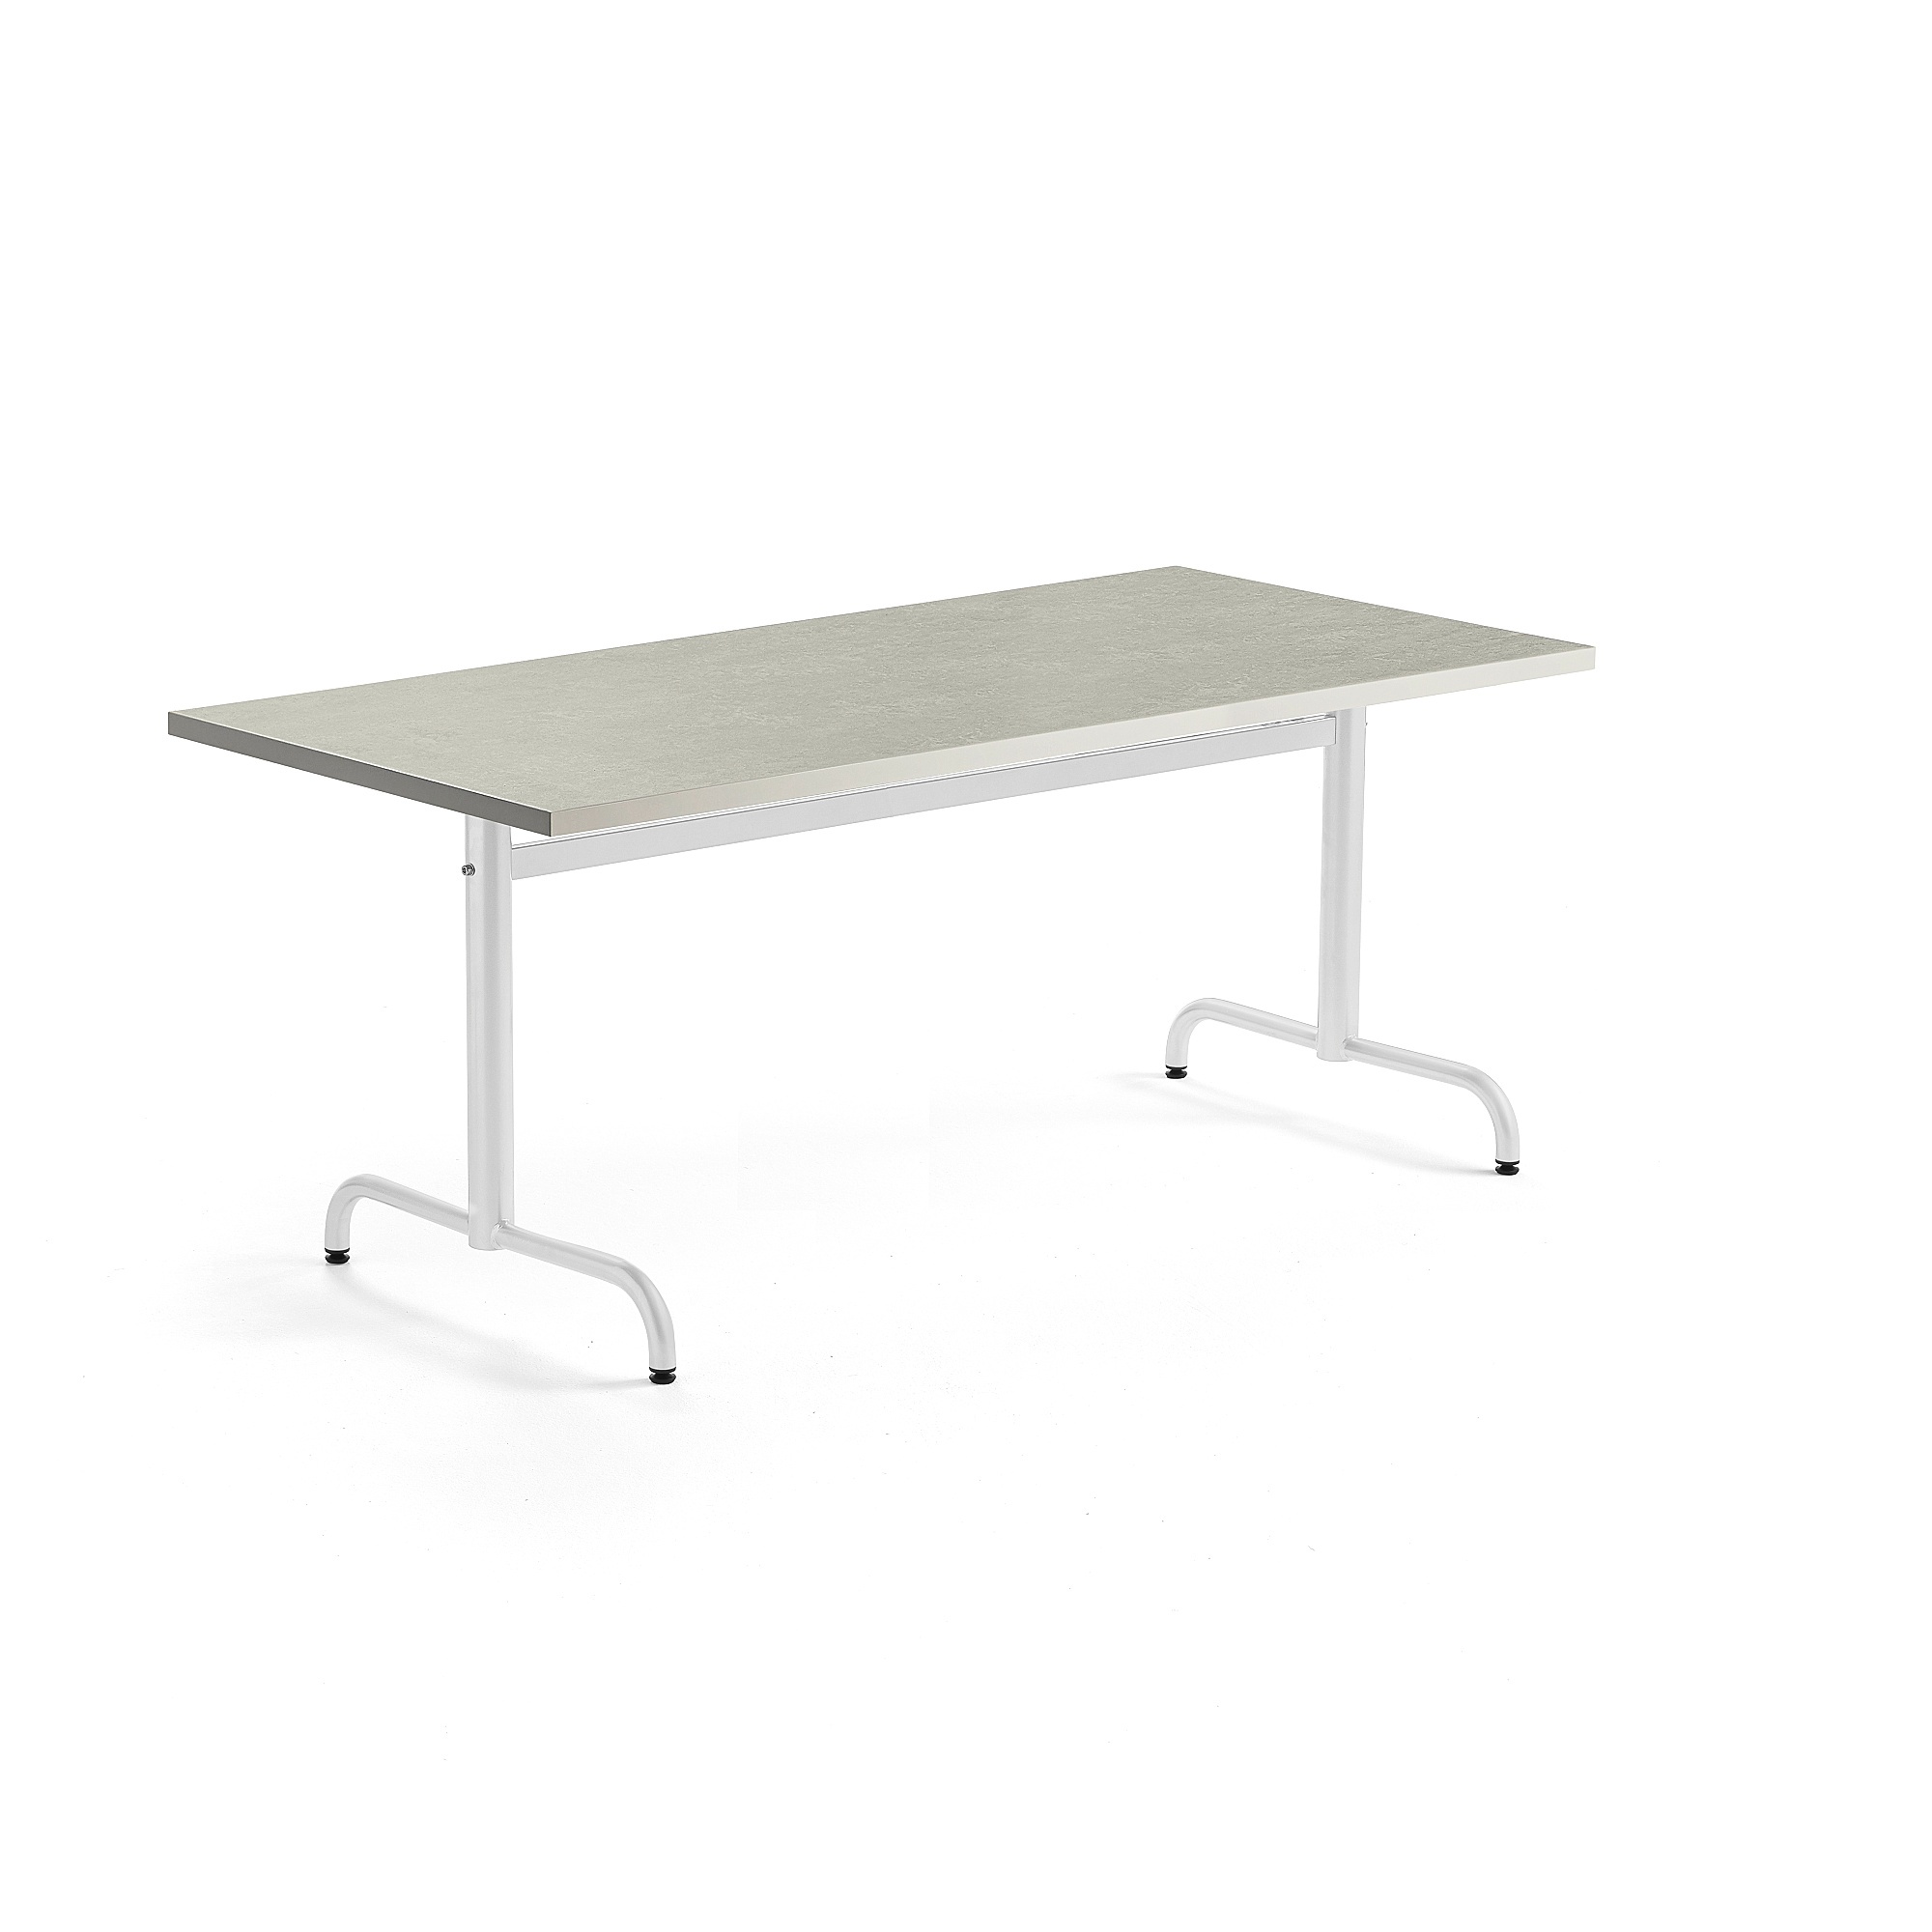 Stůl PLURAL, 1600x800x720 mm, linoleum, šedá, bílá